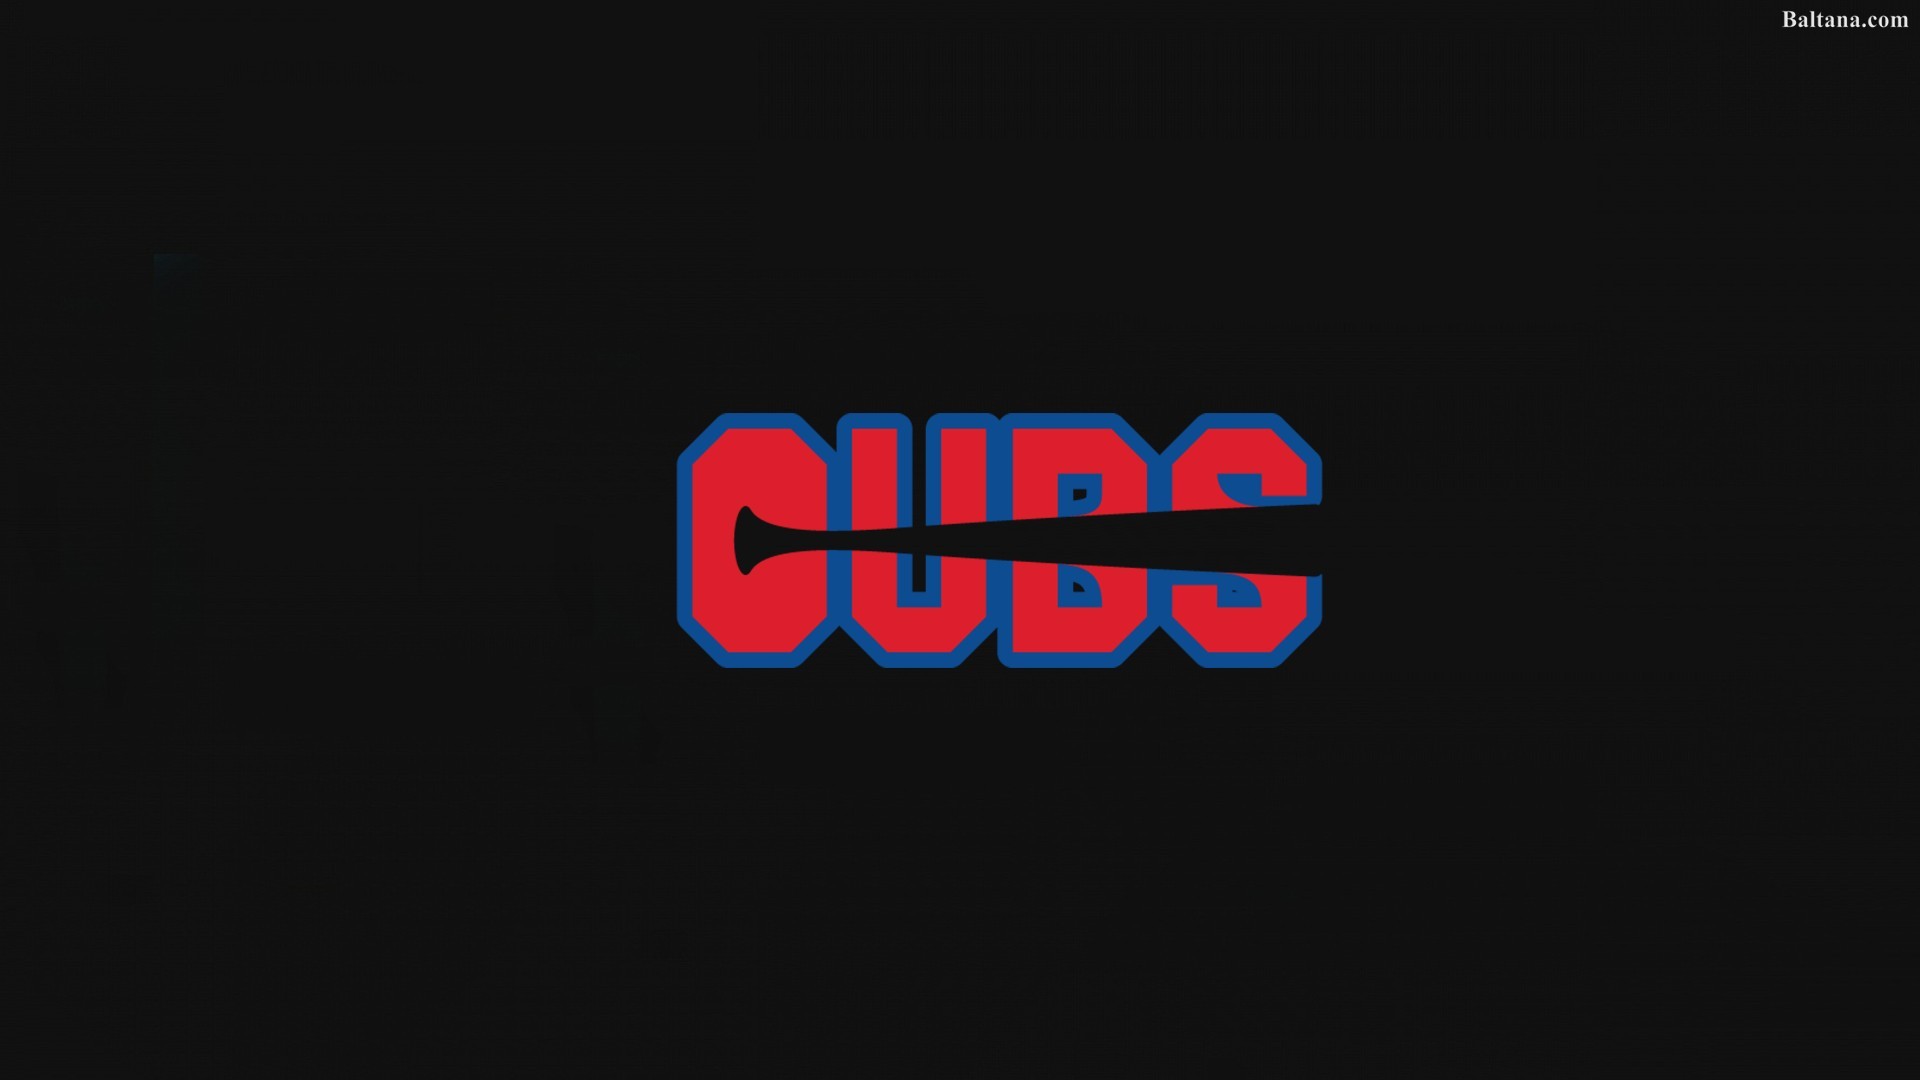 1920x1080 Chicago Cubs Best HD Wallpaper 33012